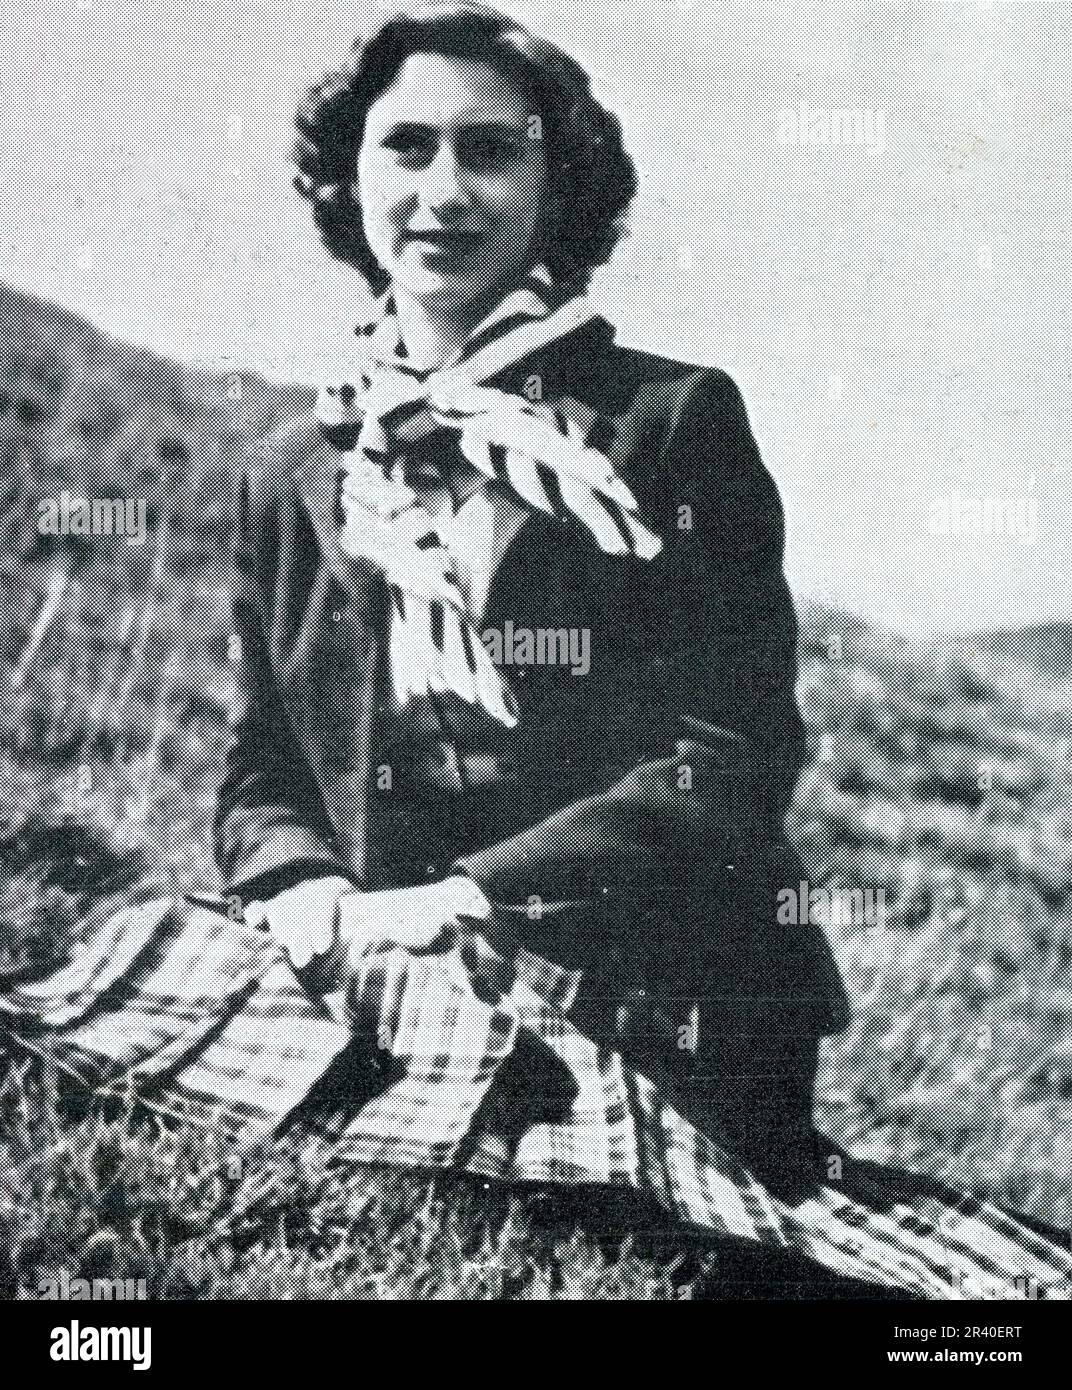 Ein entspanntes, informelles Foto von Prinzessin Margared, die einen Kilt trägt, auf den Mooren nahe Balmoral, Schottland, im August 1951 nur wenige Monate vor dem frühen Tod des Königs im Februar 1952, nur 56 Jahre alt. Die königliche Familie hat beim Schießen oft Picknicks im Moor gemacht. Dieses Foto wurde vom Grafen von Dalkeith gemacht, der später der 9. Herzog von Buccleuch wurde. Schottland, Großbritannien Stockfoto